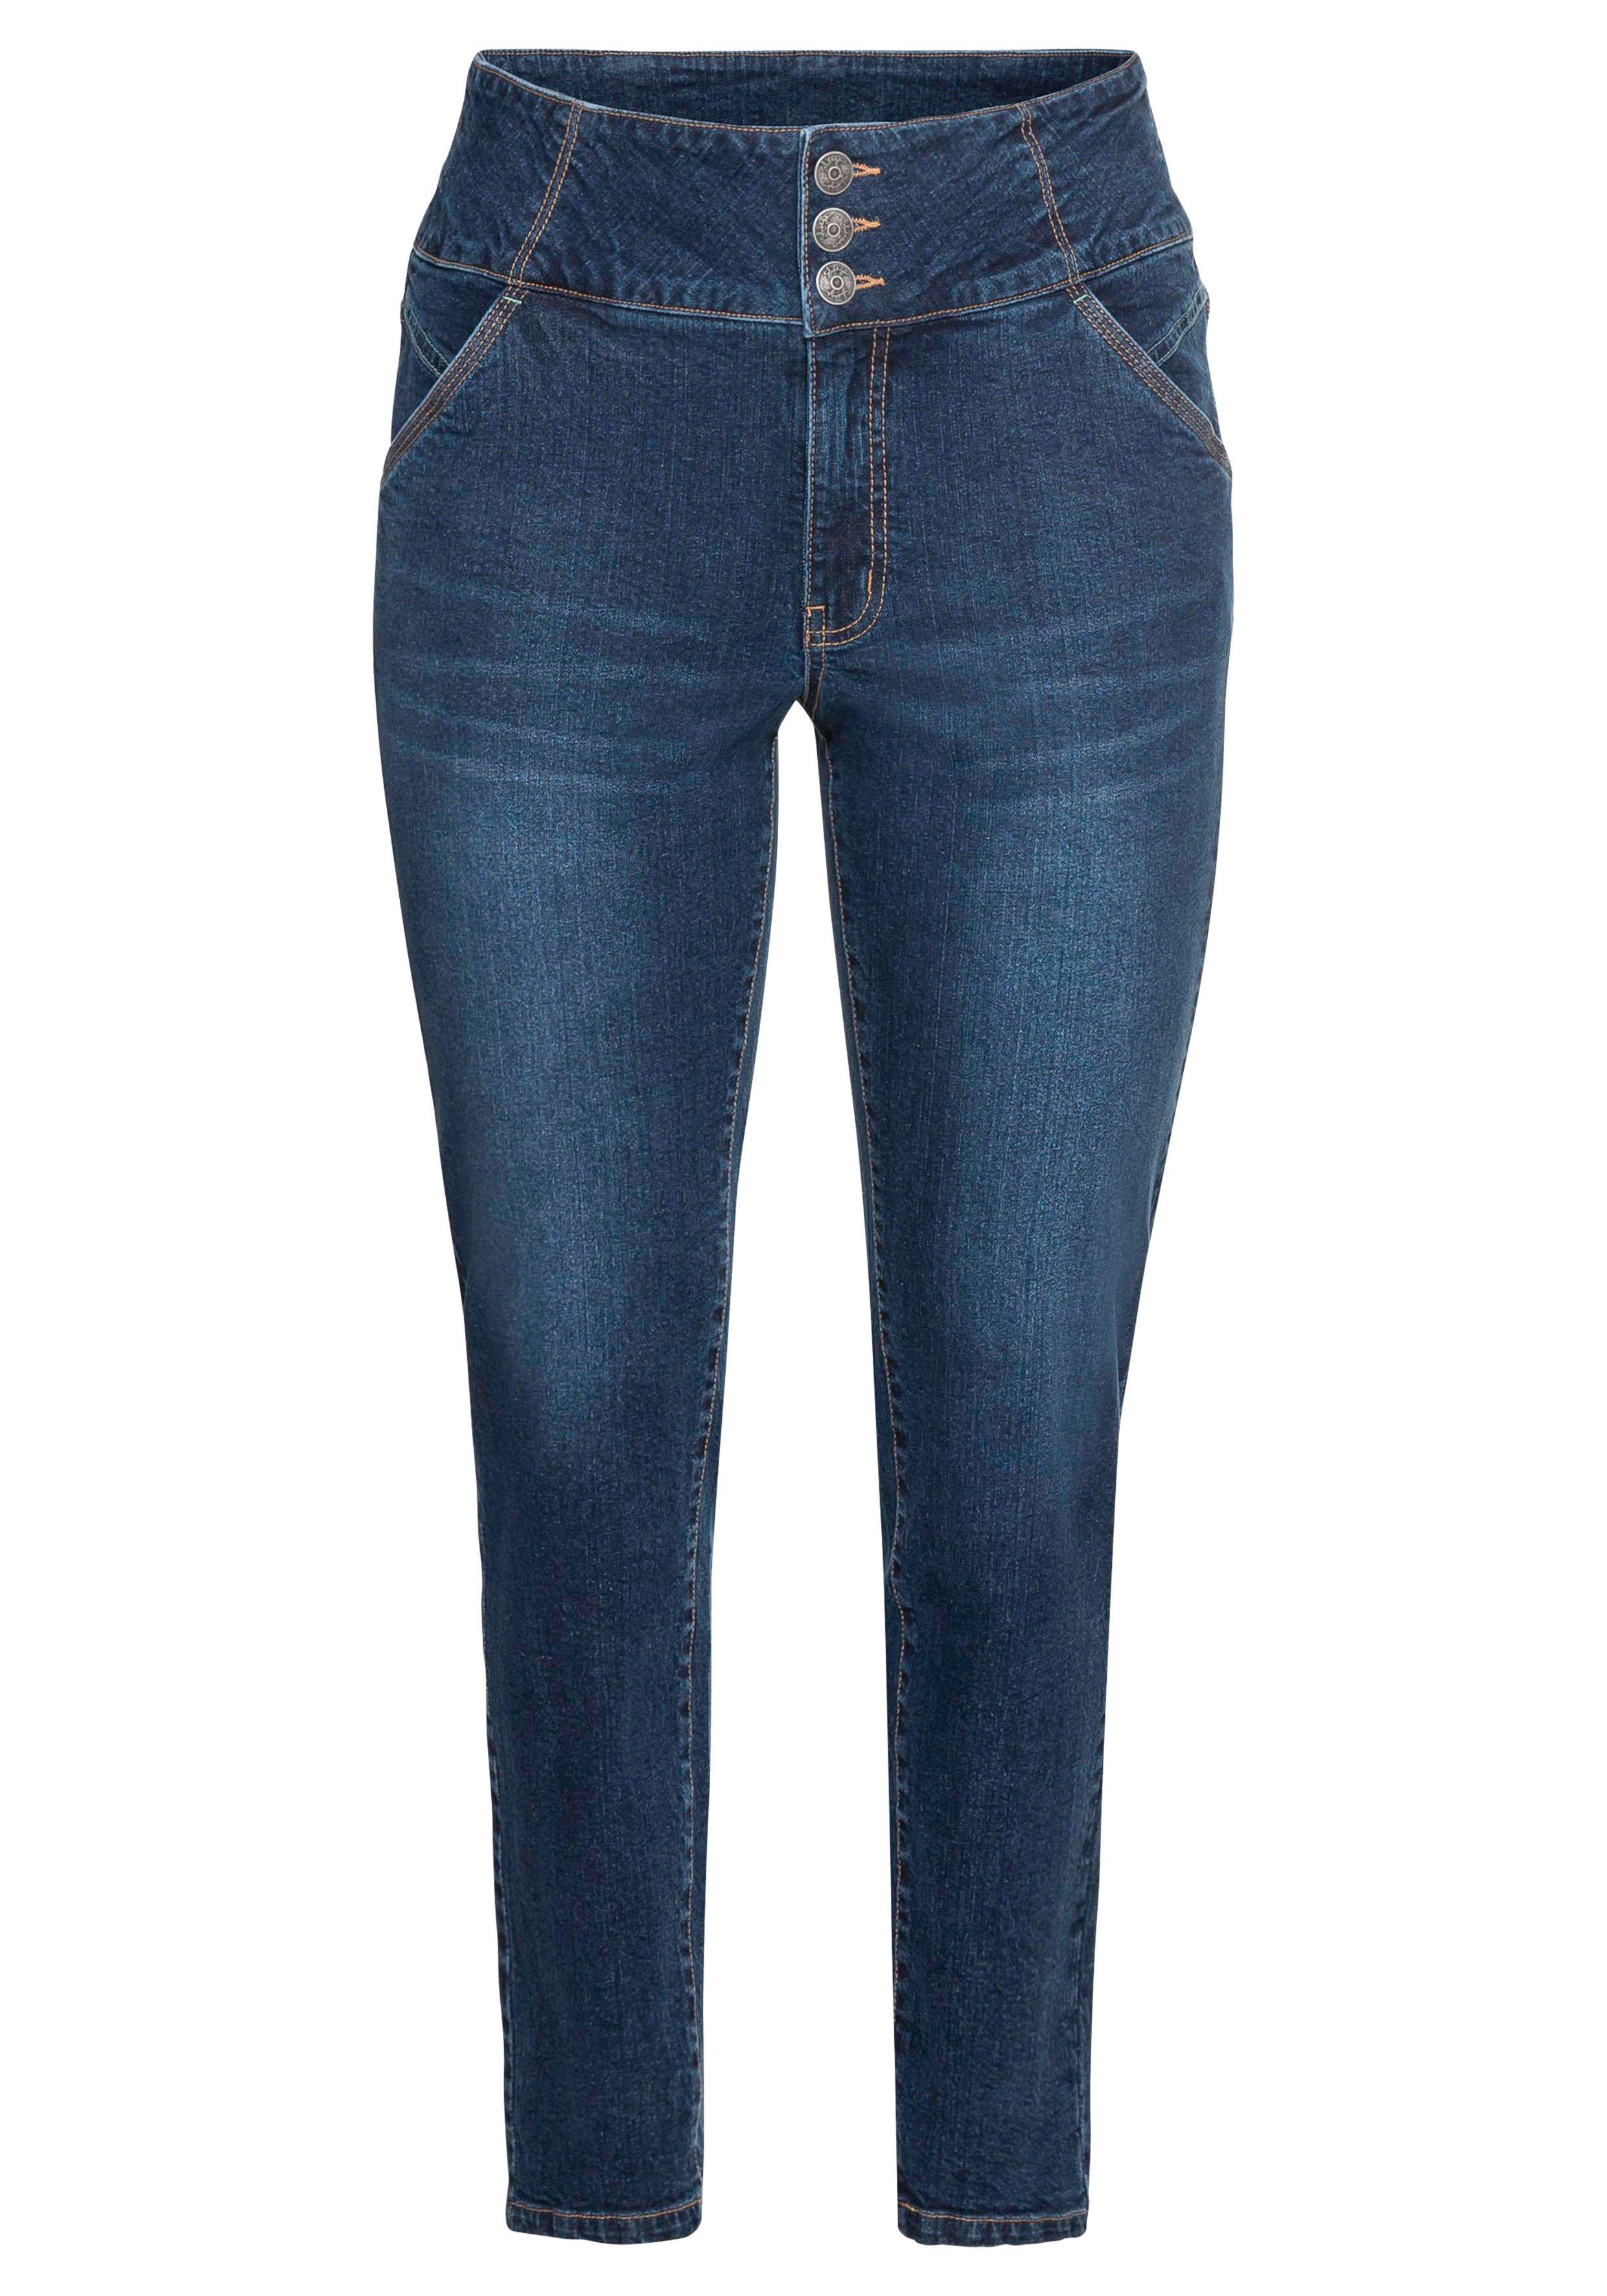 Slim Jeans in Curvy-Schnitt | ANNE, sheego dark - Denim High-Waist-Bund mit blue